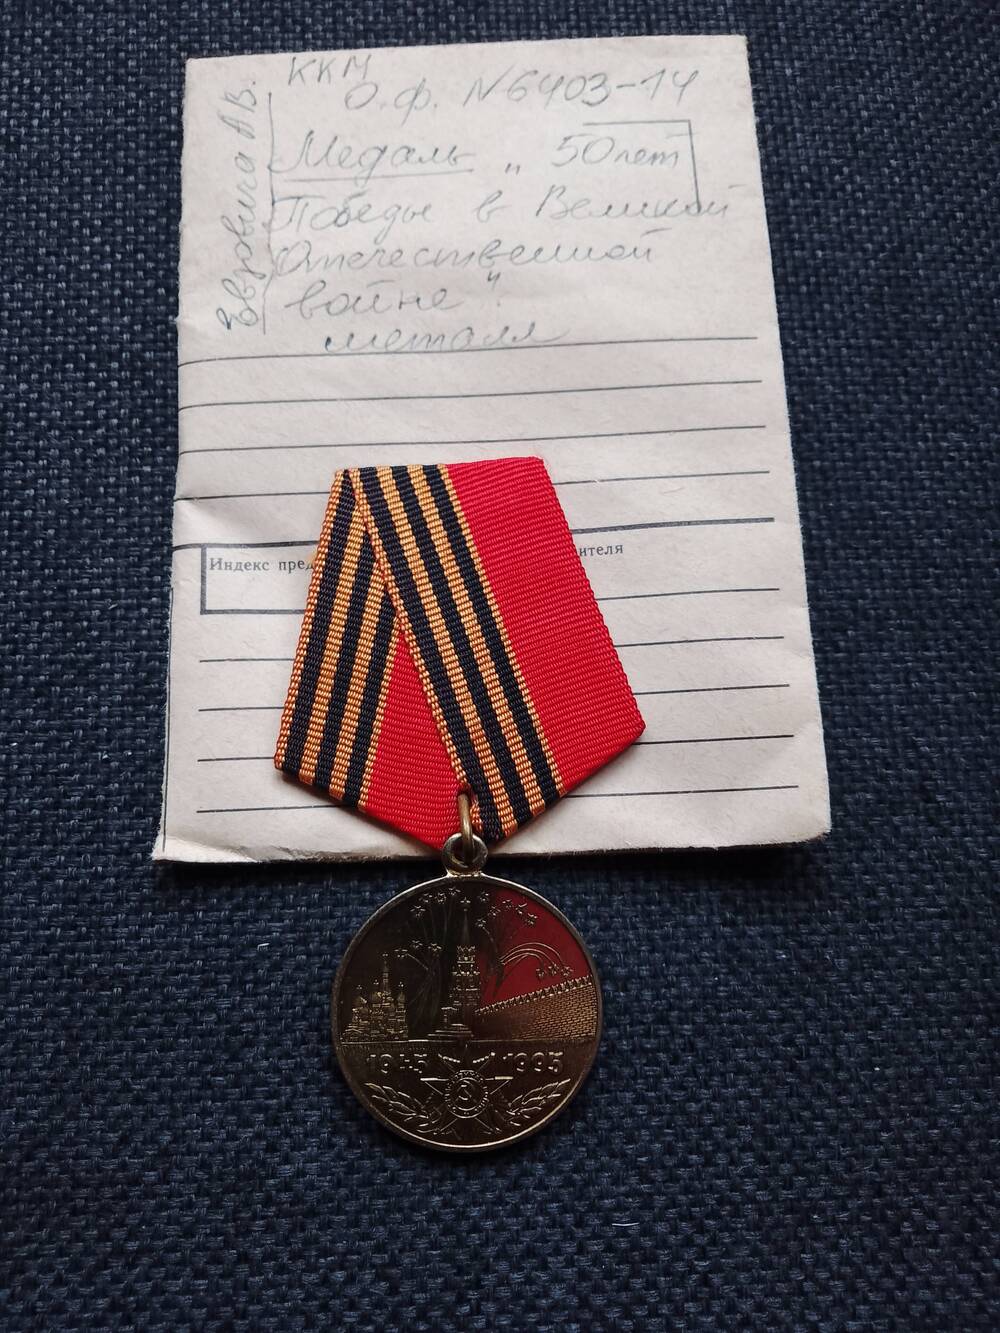 Медаль 50 лет Победы в В.О. войне, 1941-1945 гг.